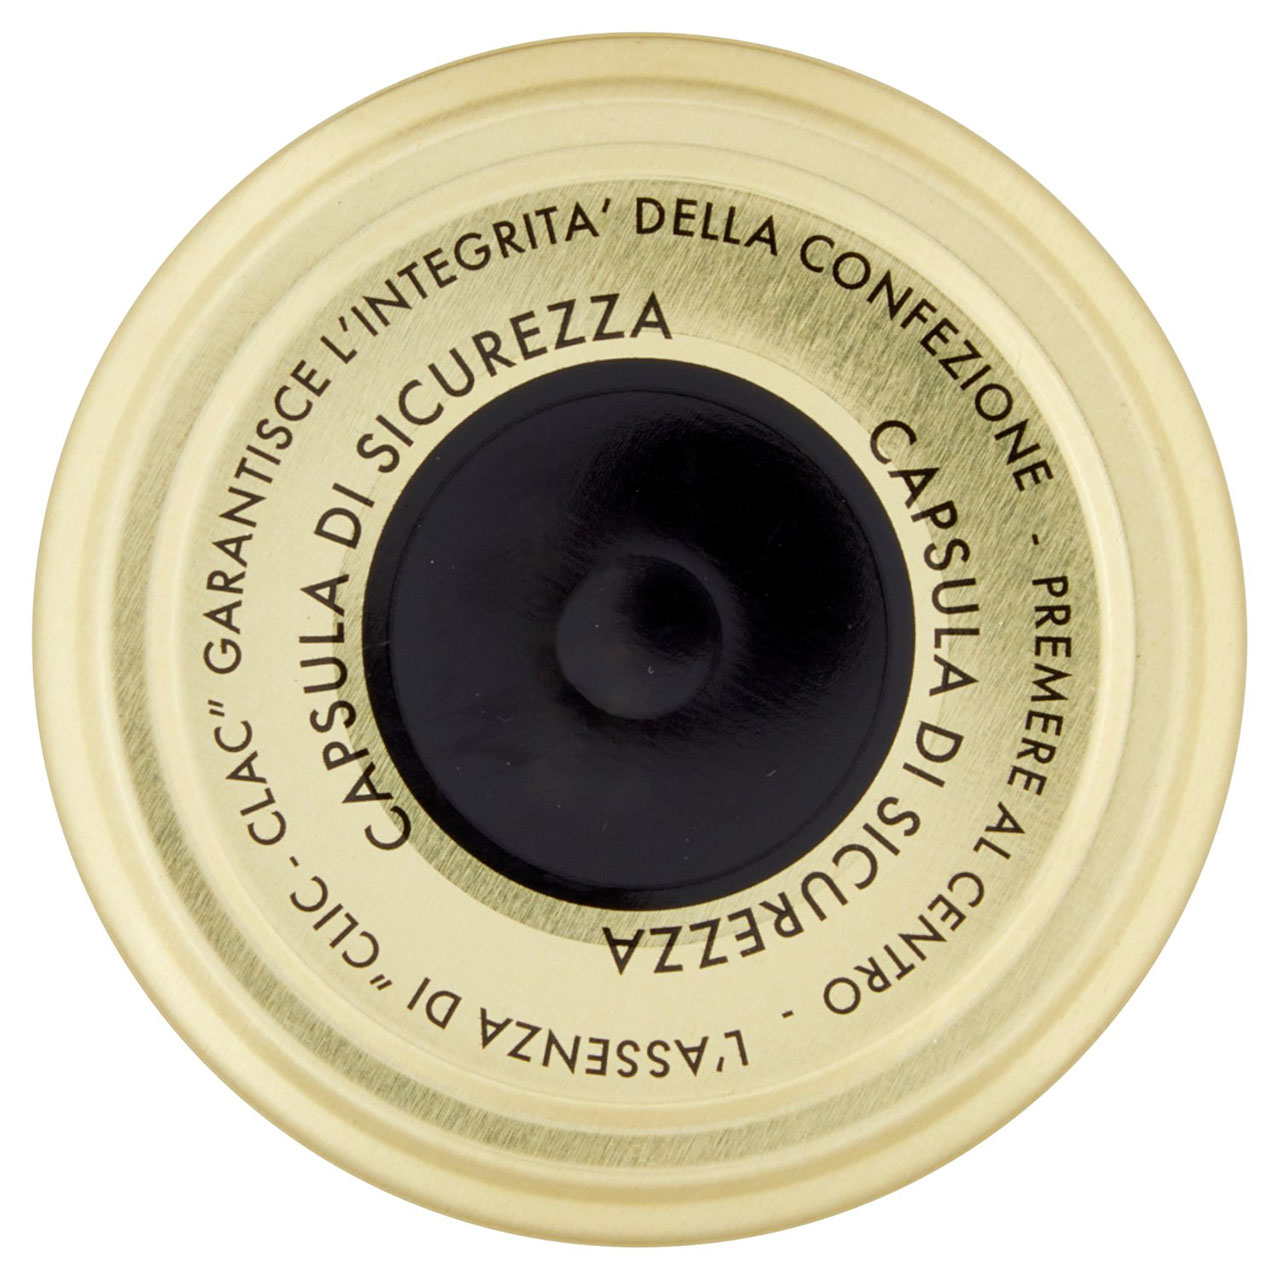 Pasta di Olive Taggiasche con Olio EVO 10% 180 g